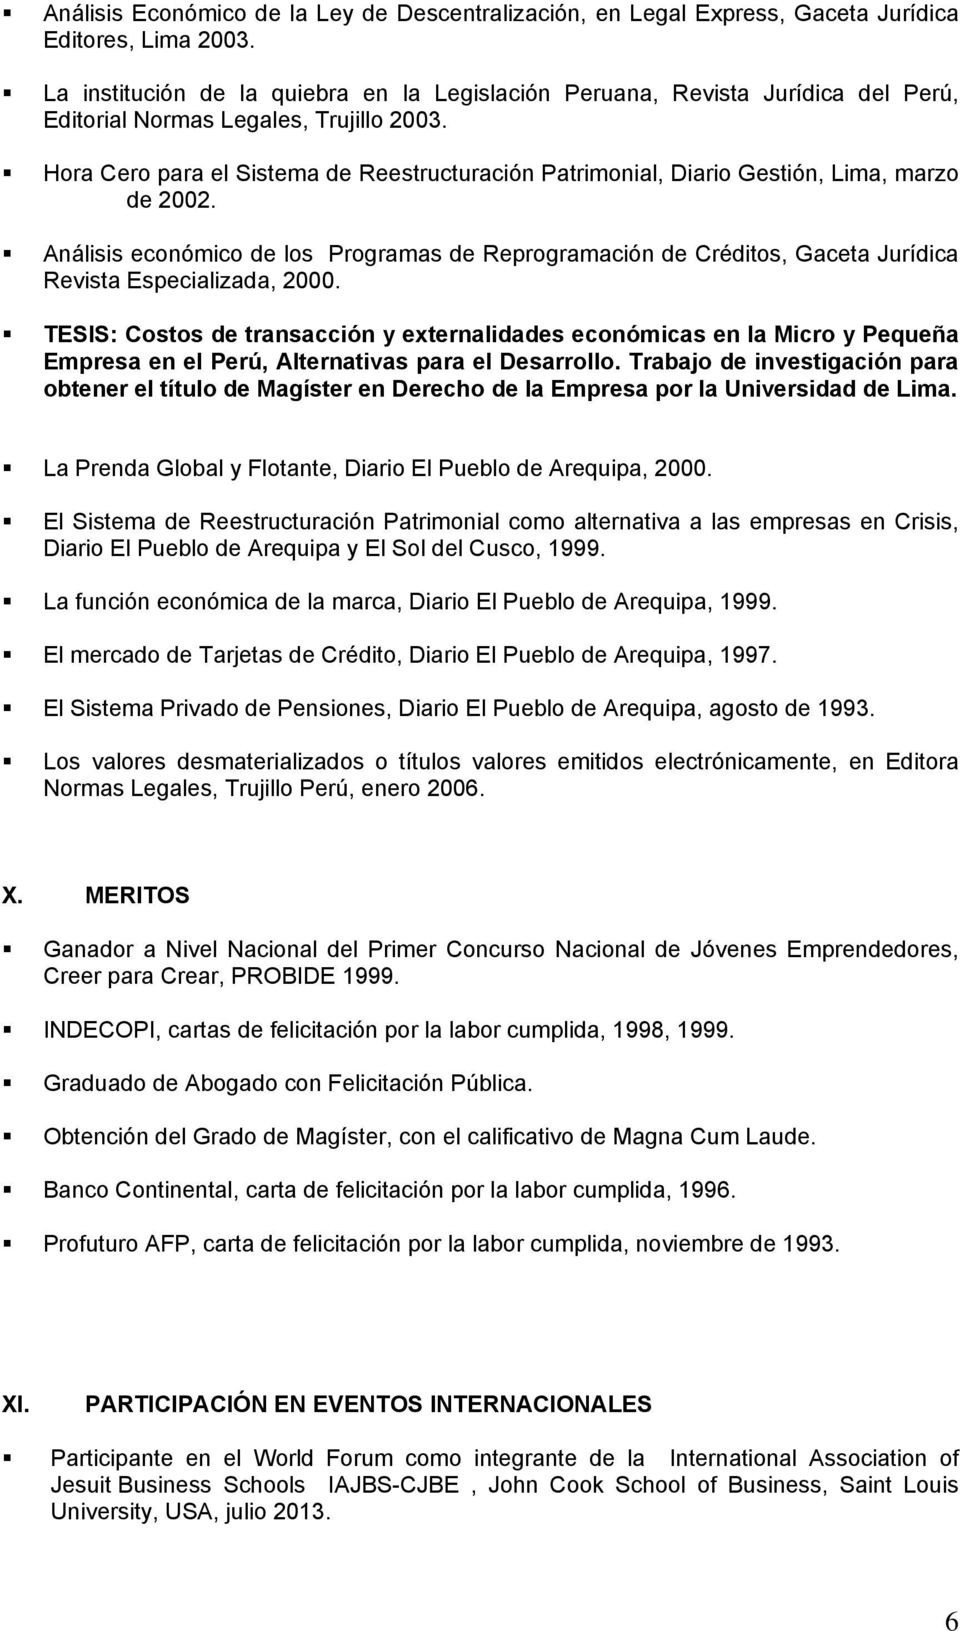 Hora Cero para el Sistema de Reestructuración Patrimonial, Diario Gestión, Lima, marzo de 2002.